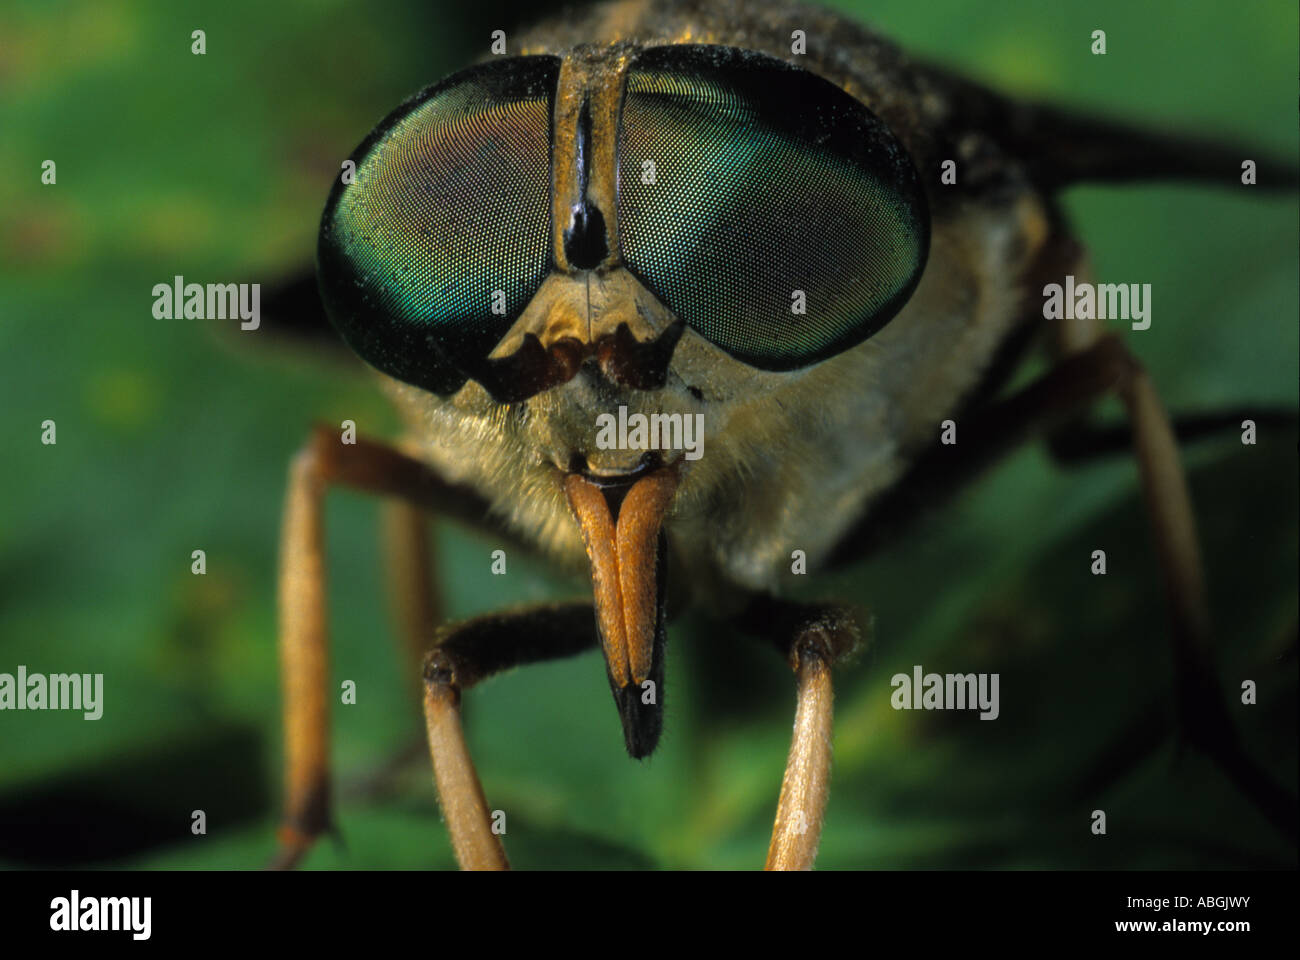 Dark giant horsefly (Tabanus sudeticus) Stock Photo